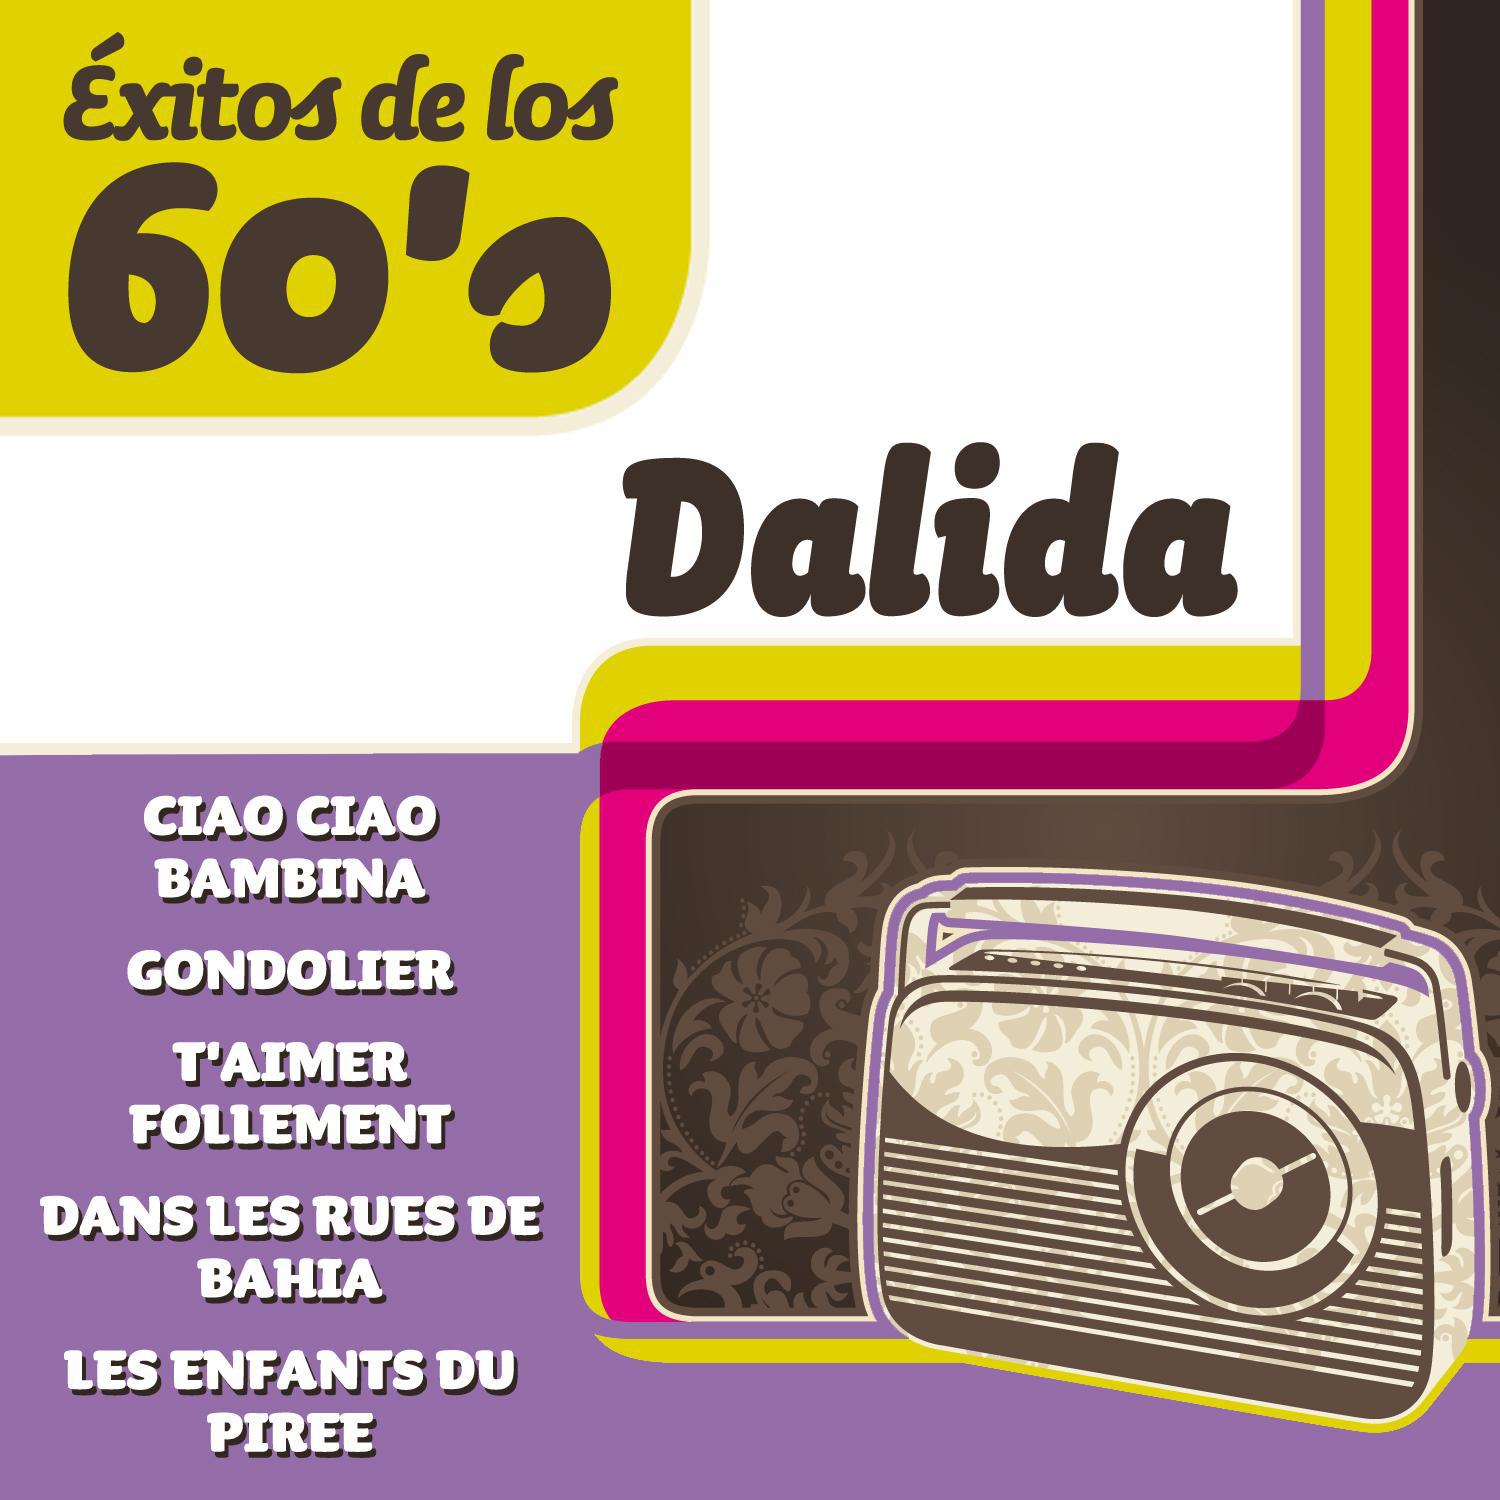 Exitos De Los 60's - Dalida